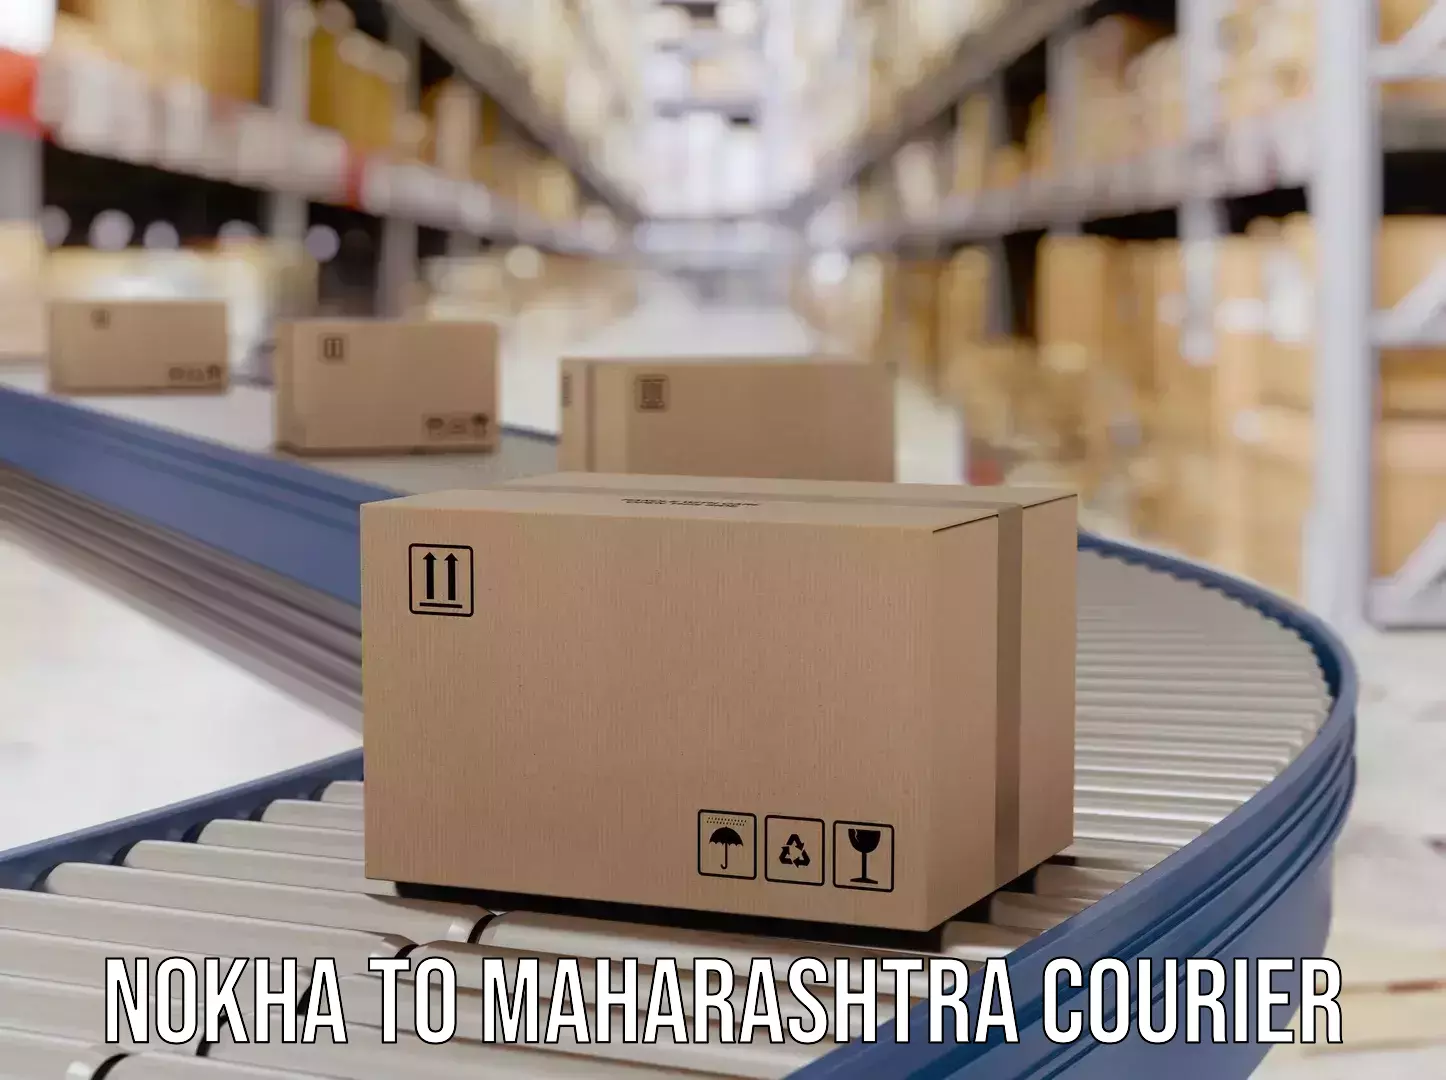 High-capacity parcel service Nokha to Maharashtra